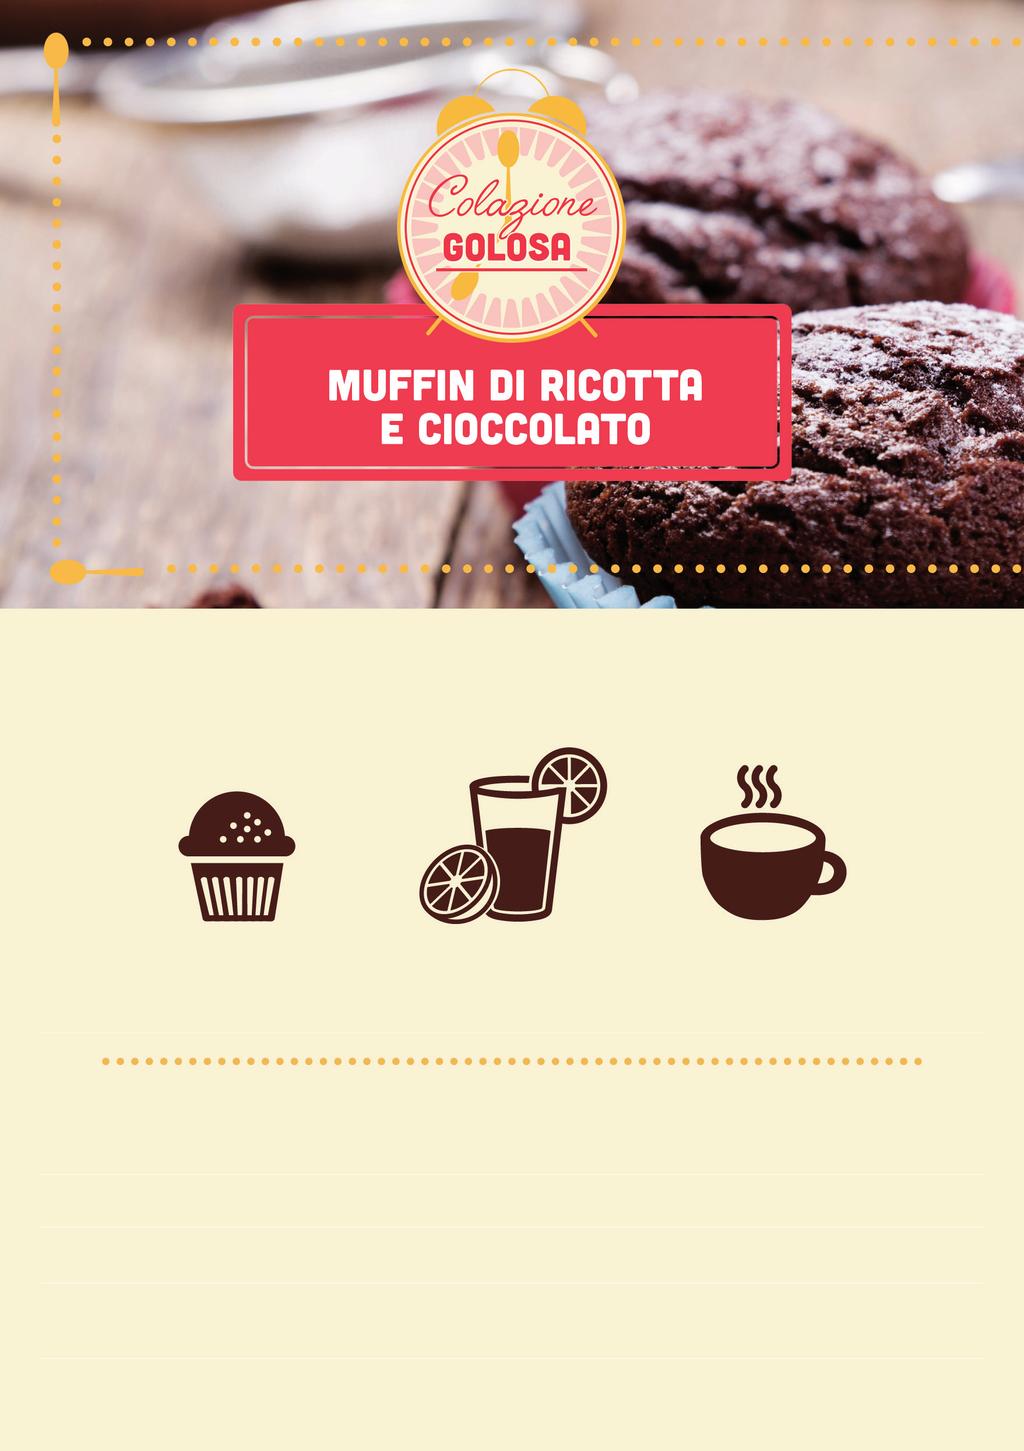 LA NOSTRA PROPOSTA DI COLAZIONE Un Muffin di ricotta e cioccolato Spremuta d arancia (150ml) Cappuccino Energia (kcal) 372